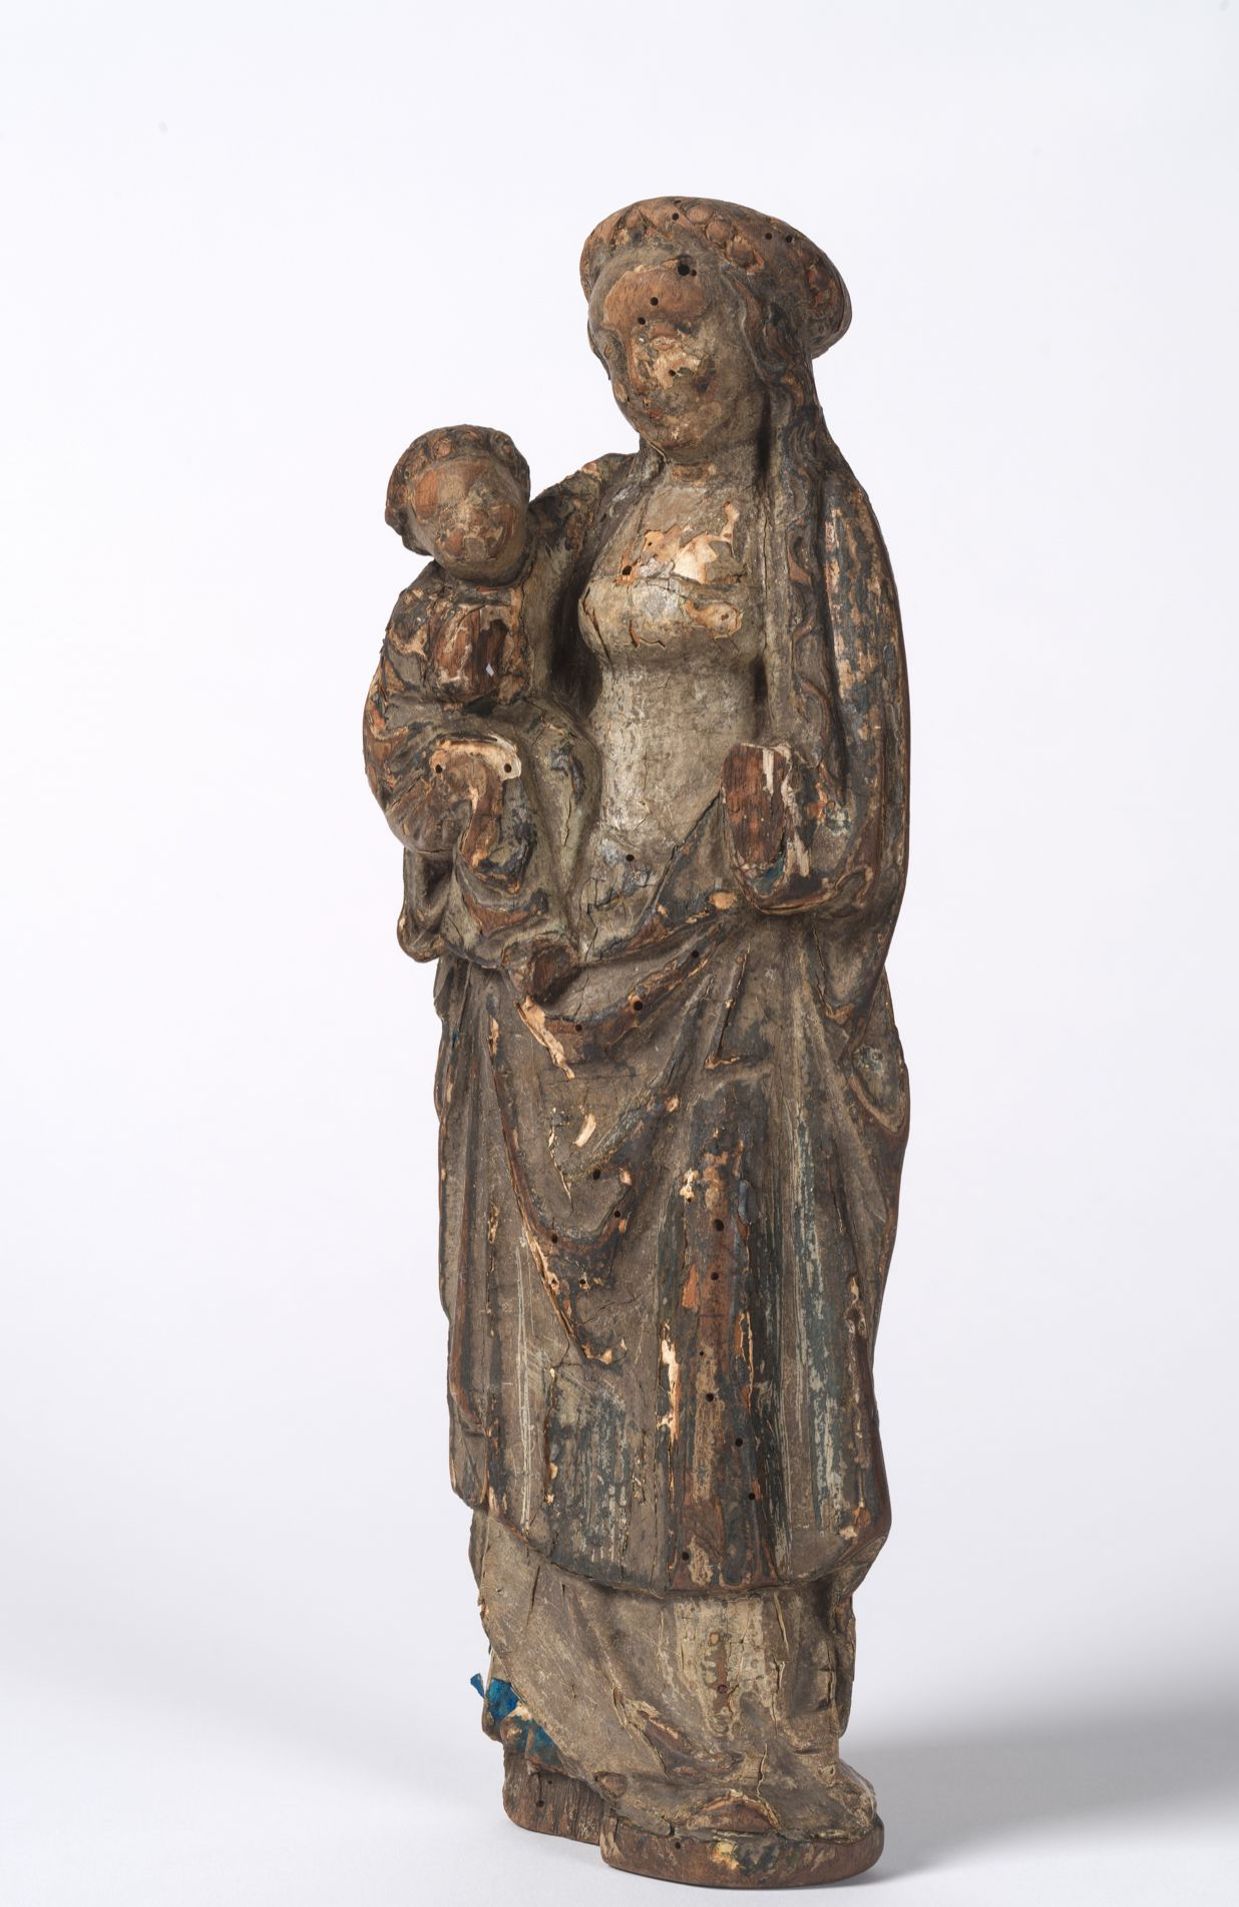 La poupée malinoise datant du 16ᵉ siècle a été endommagée par l'eau polluée 